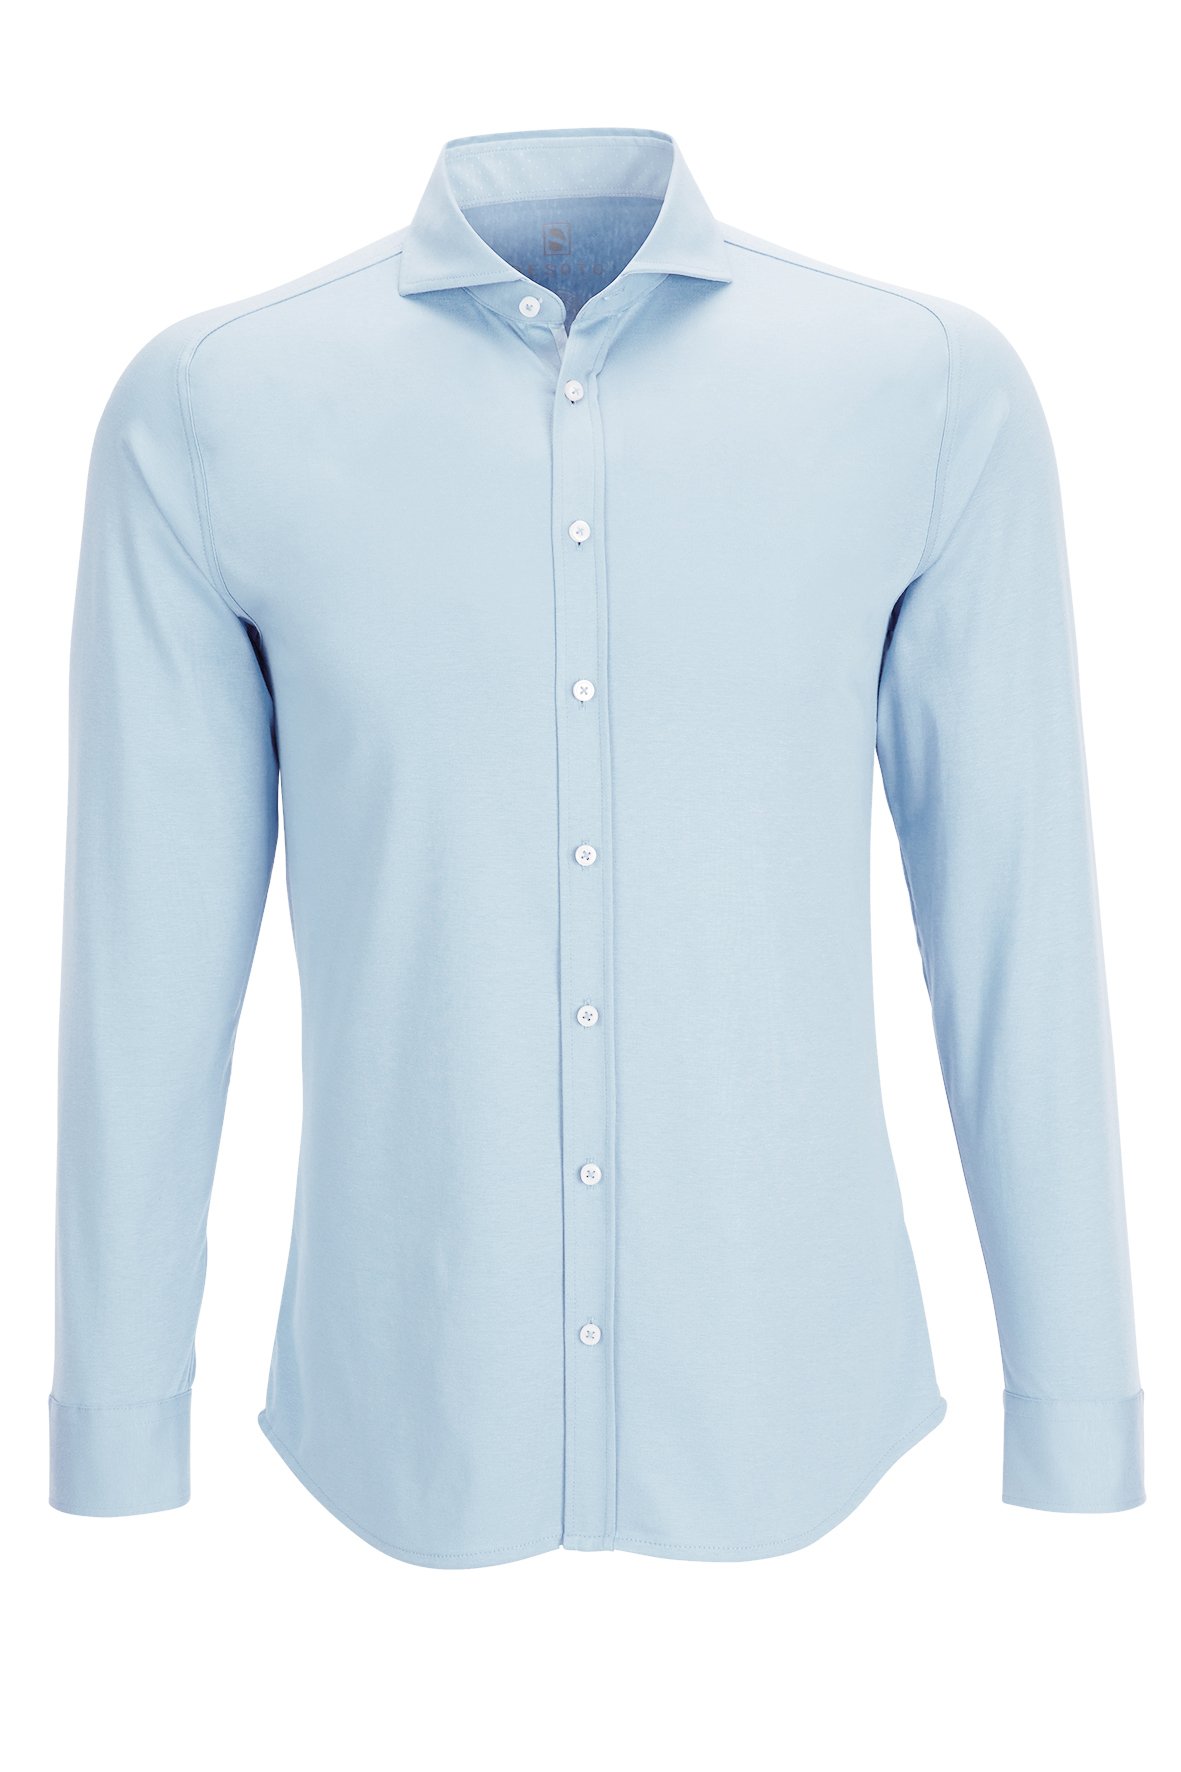 DESOTO | Jersey shirt »Hai« light blue